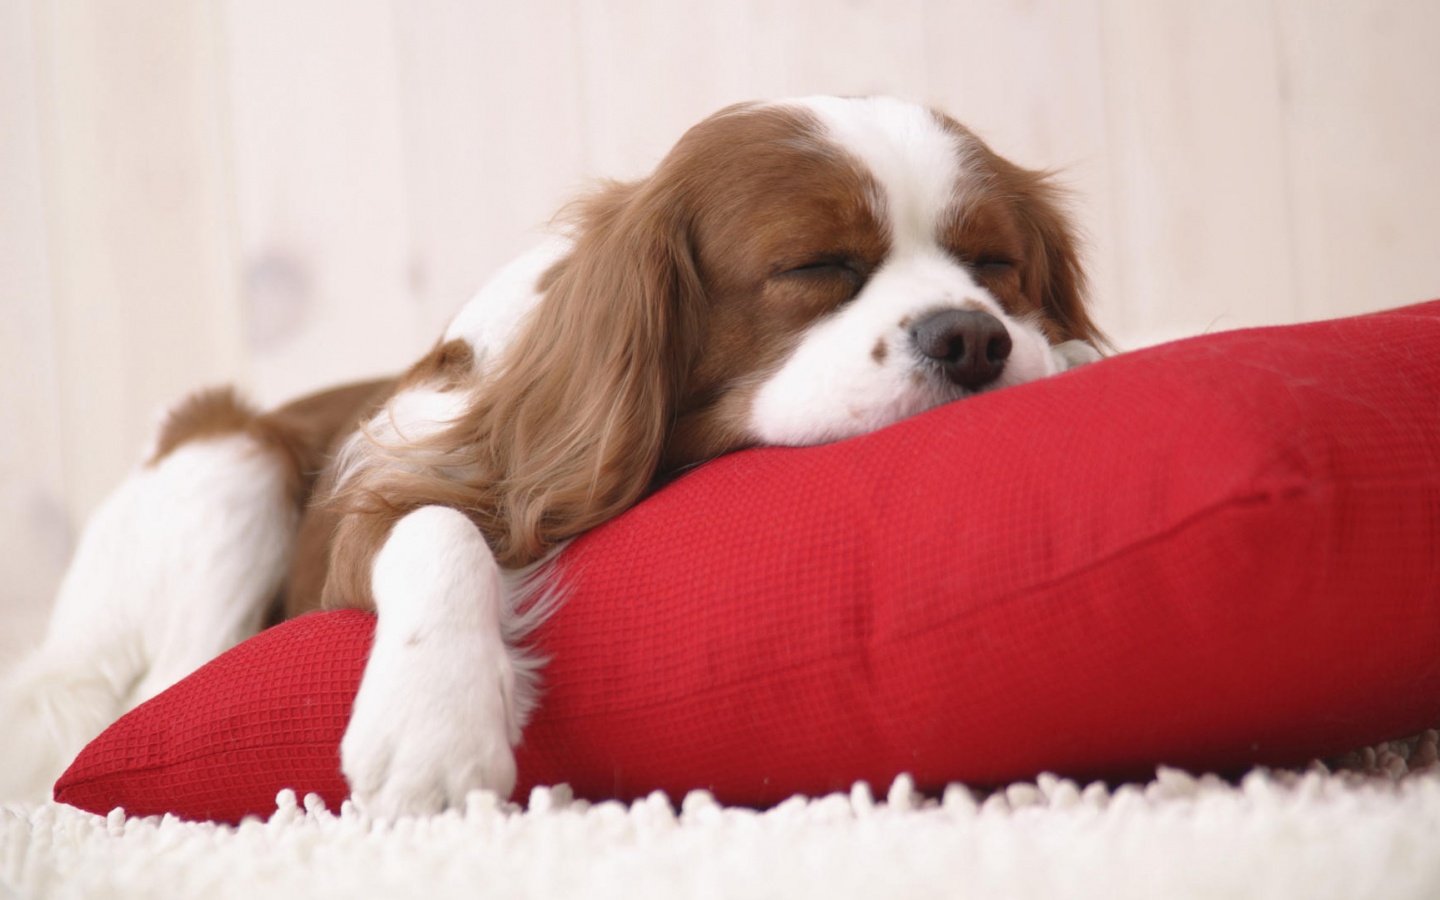 Спящий щенок на красной подушке обои